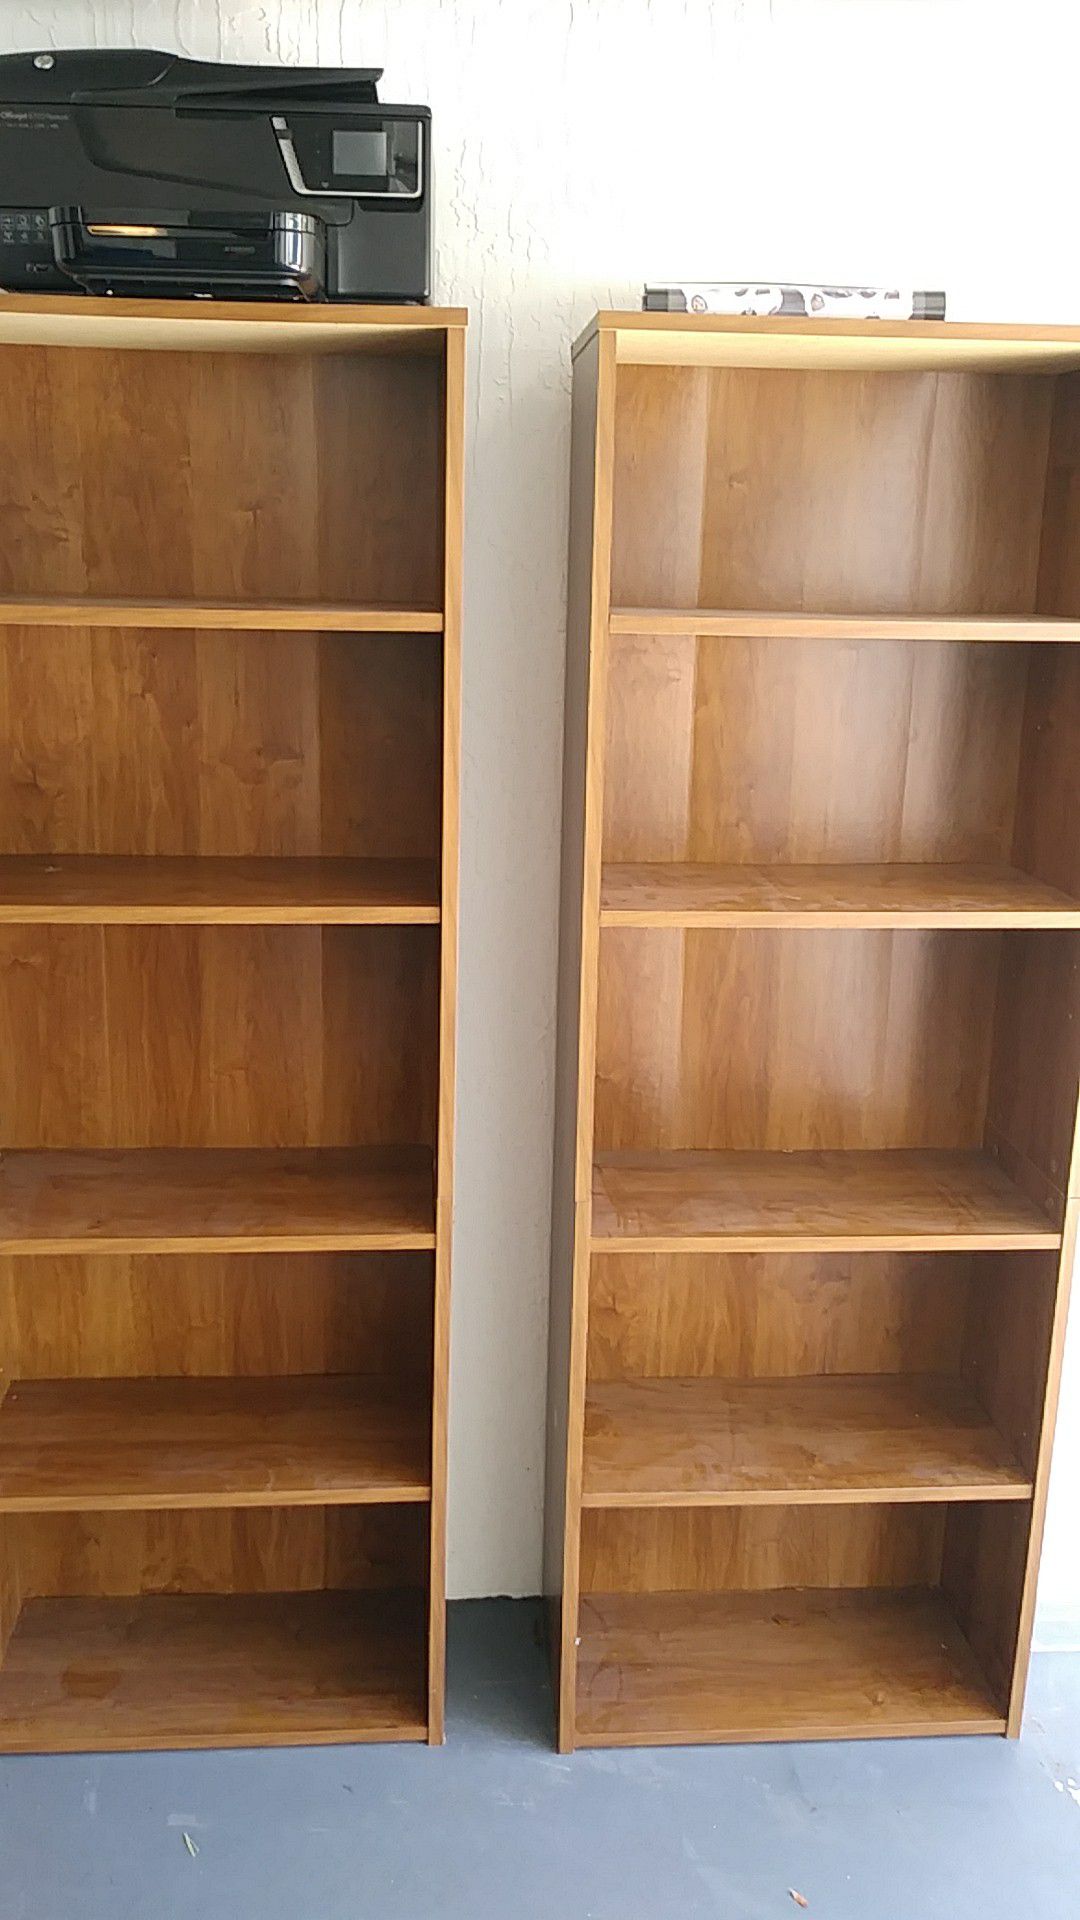 2 wooden Bookshelves